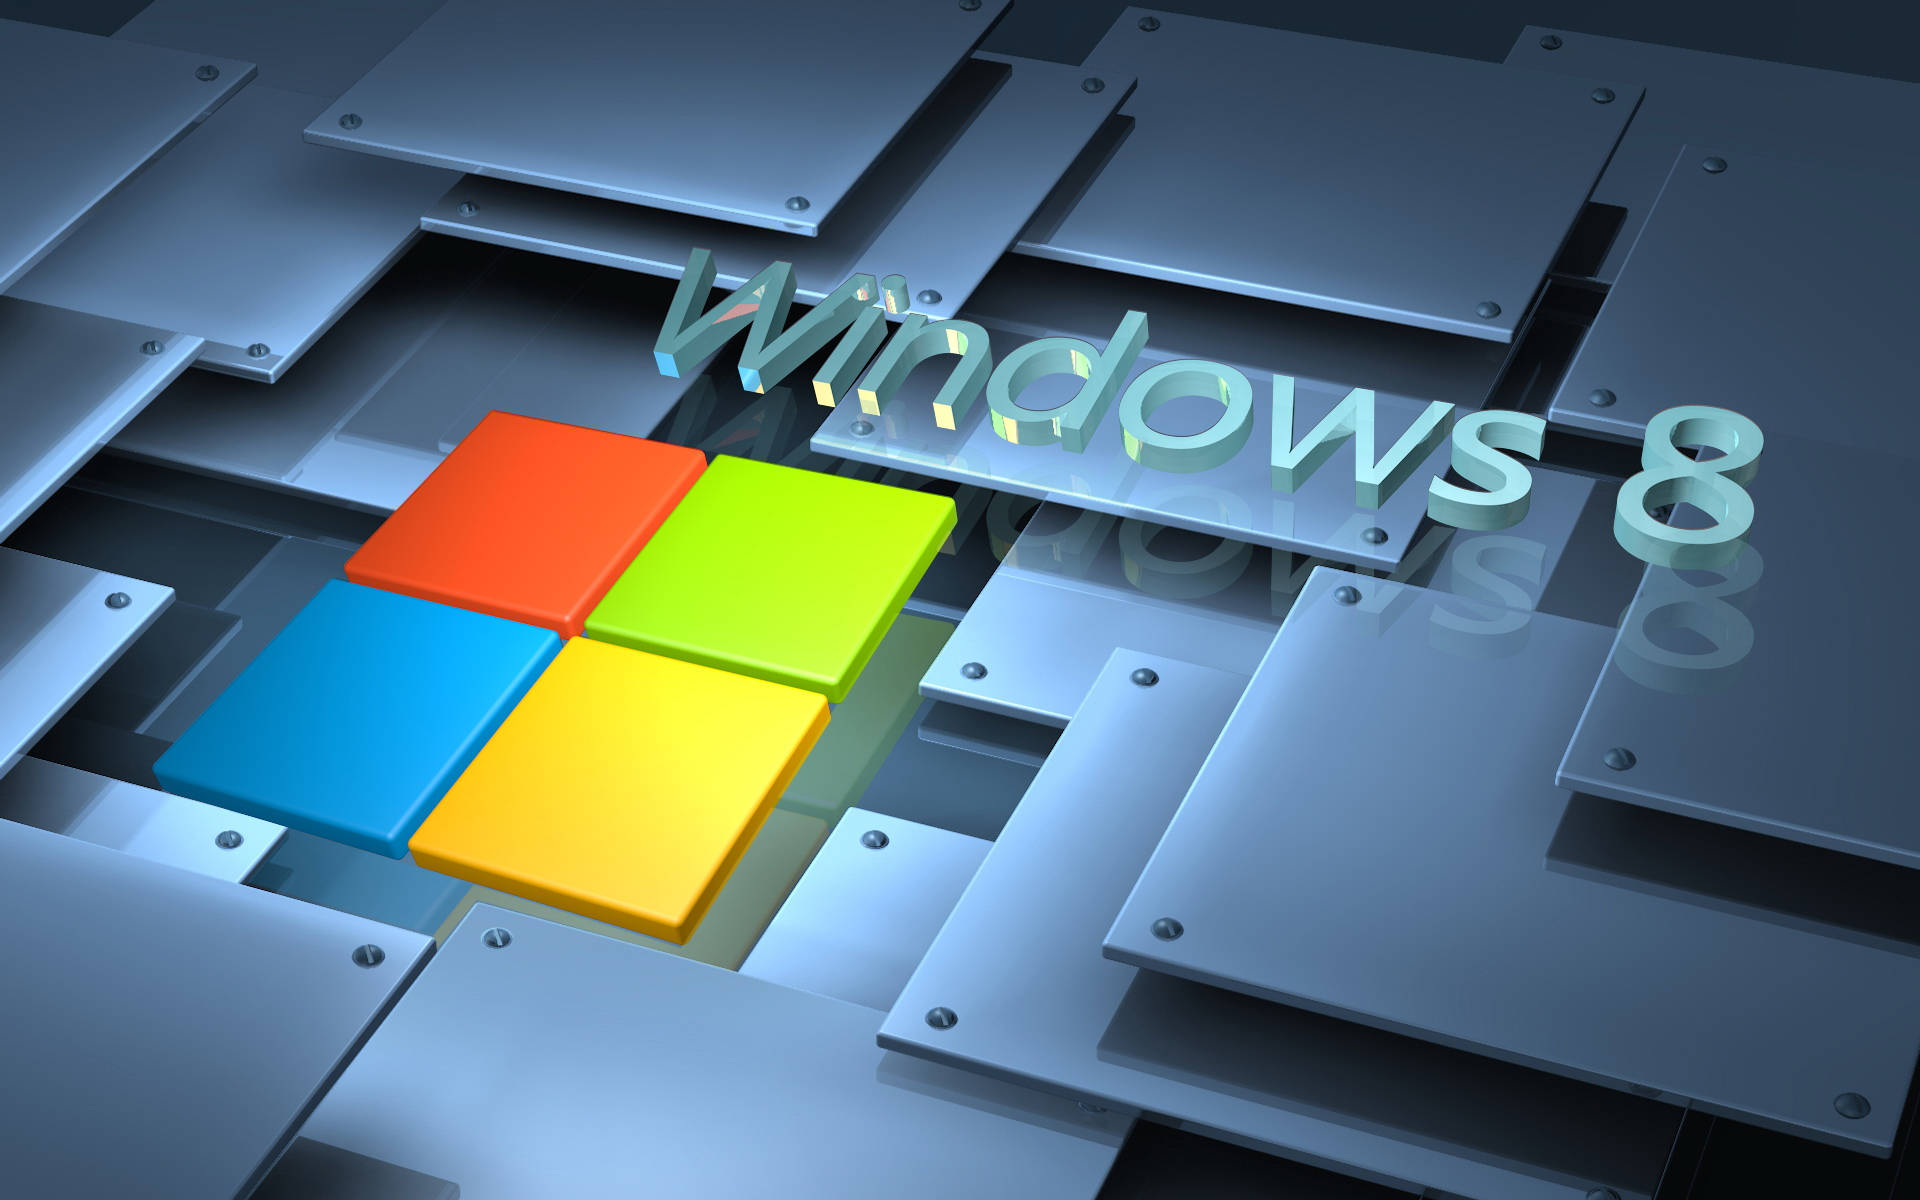 Windows8 Bakgrund Med Stålkakelplattor. Wallpaper